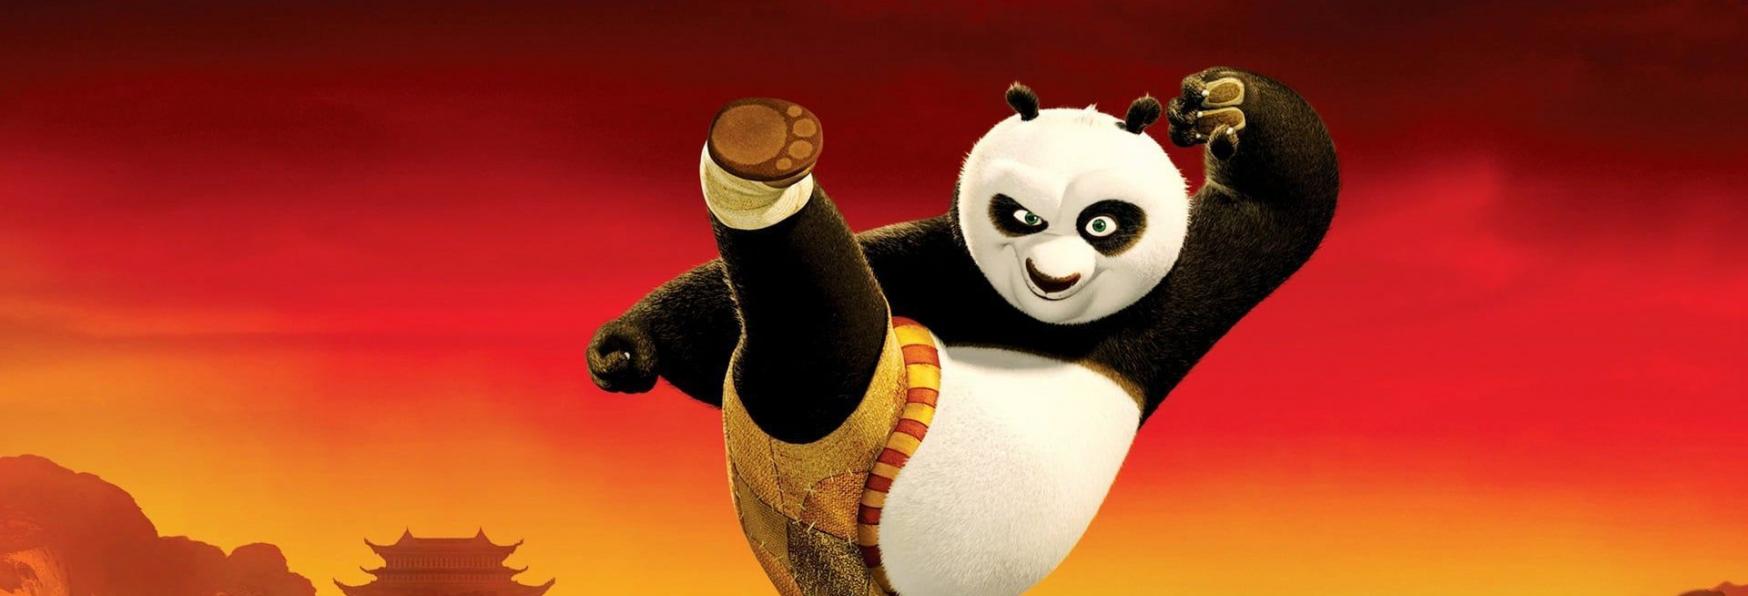 Kung Fu Panda: The Dragon Knight - Netflix ordina la Serie Animata, Jack Black tornerà nel Ruolo di Po